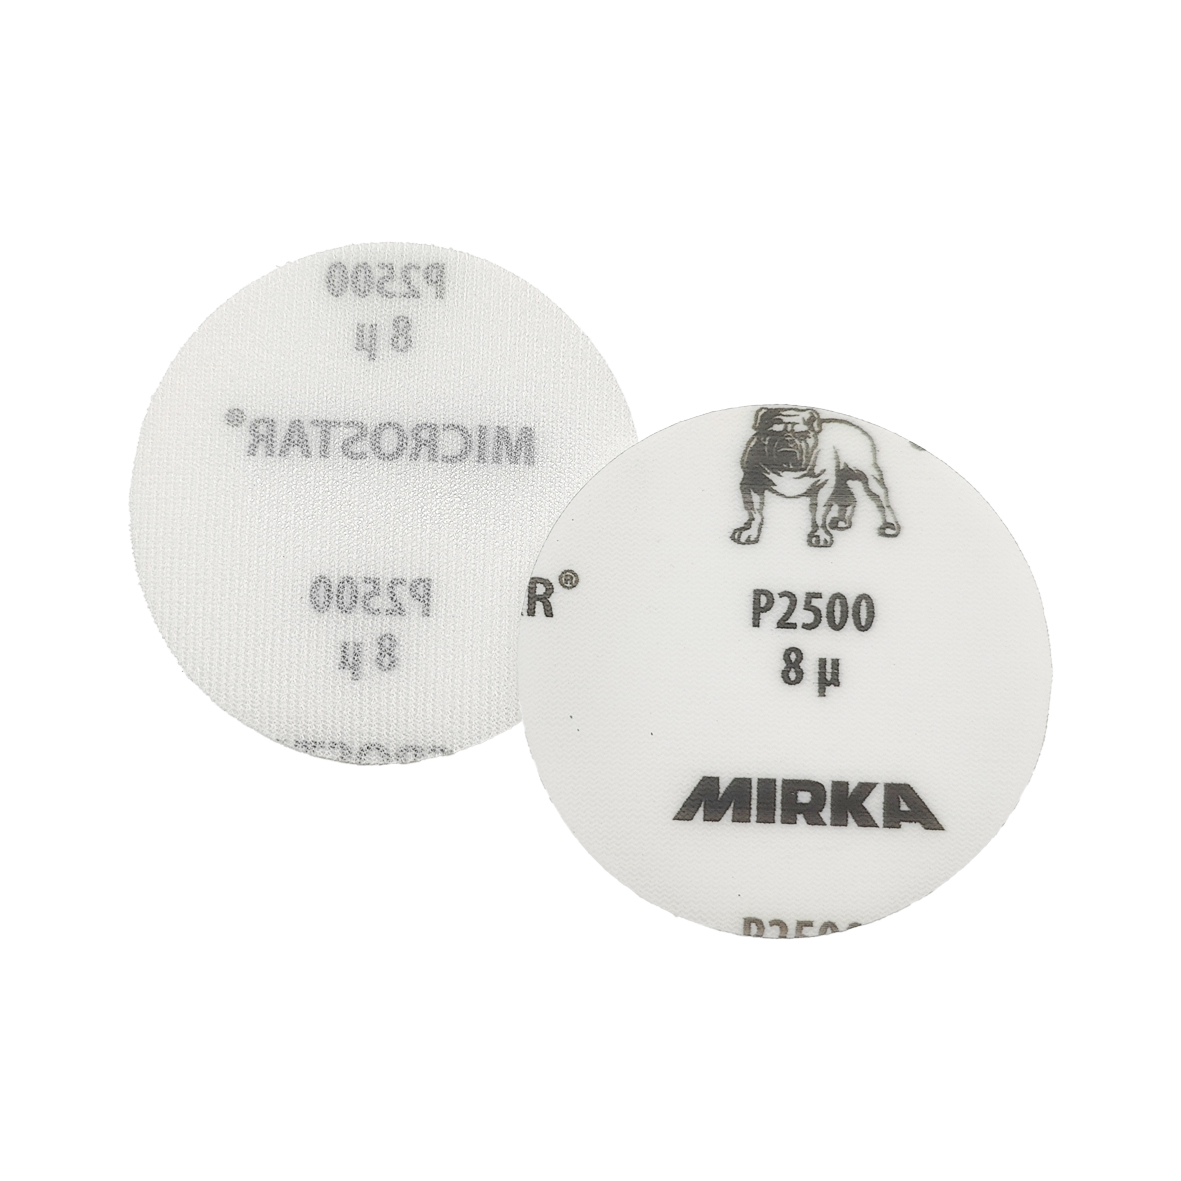 Abbildung Mirka Microstar 77mm Scheiben Vorder- und Rückseite.